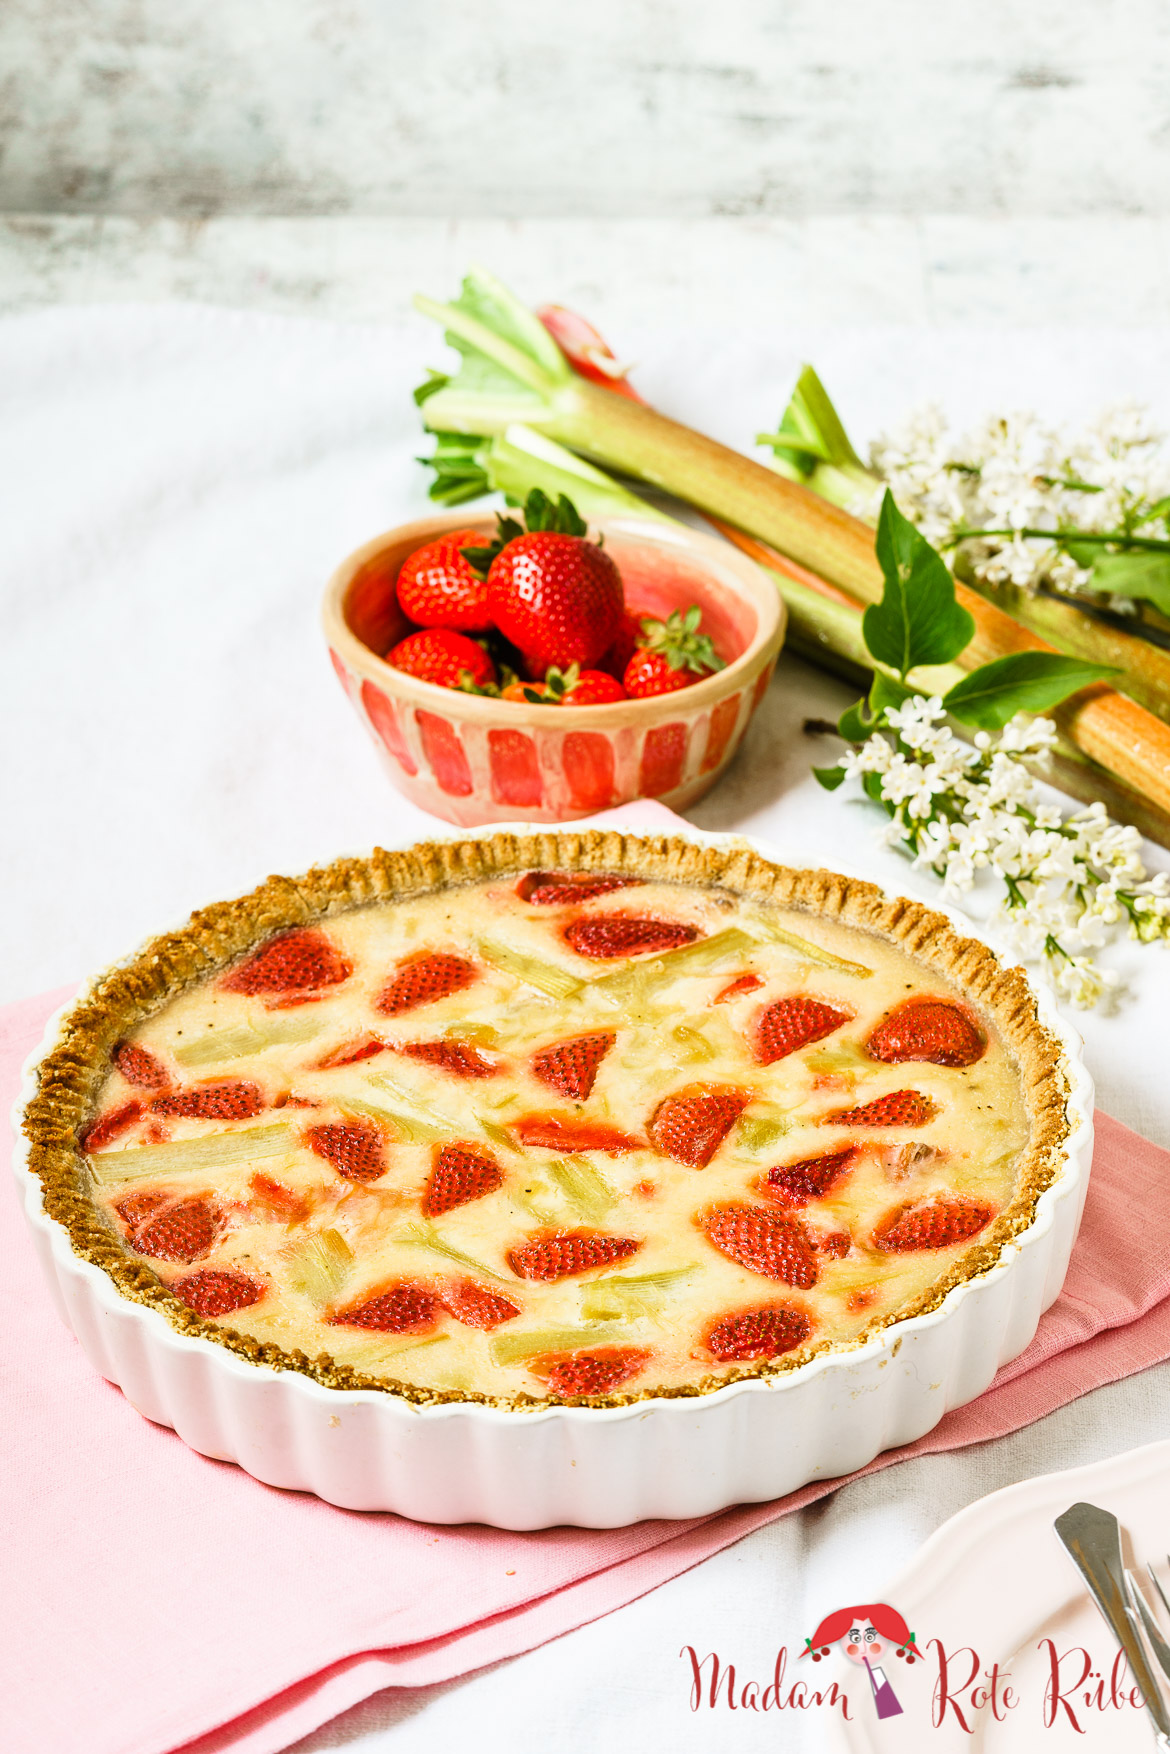 Madam Rote Rübe - Dinkelvollkorn-Tarte mit Rhabarberpudding, Crème fraîche und Erdbeeren